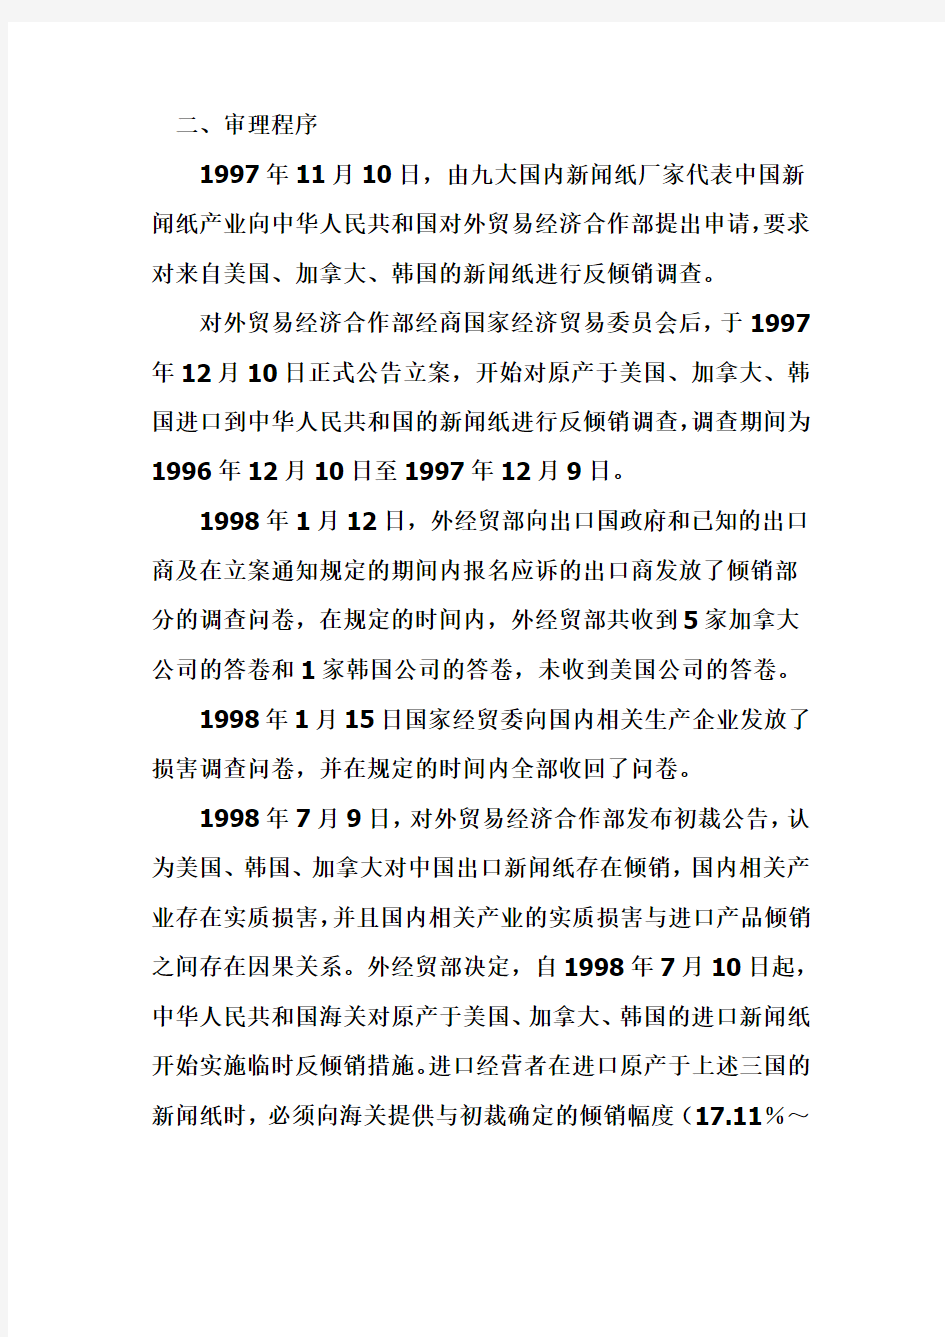 中国首例反倾销调查案件评述